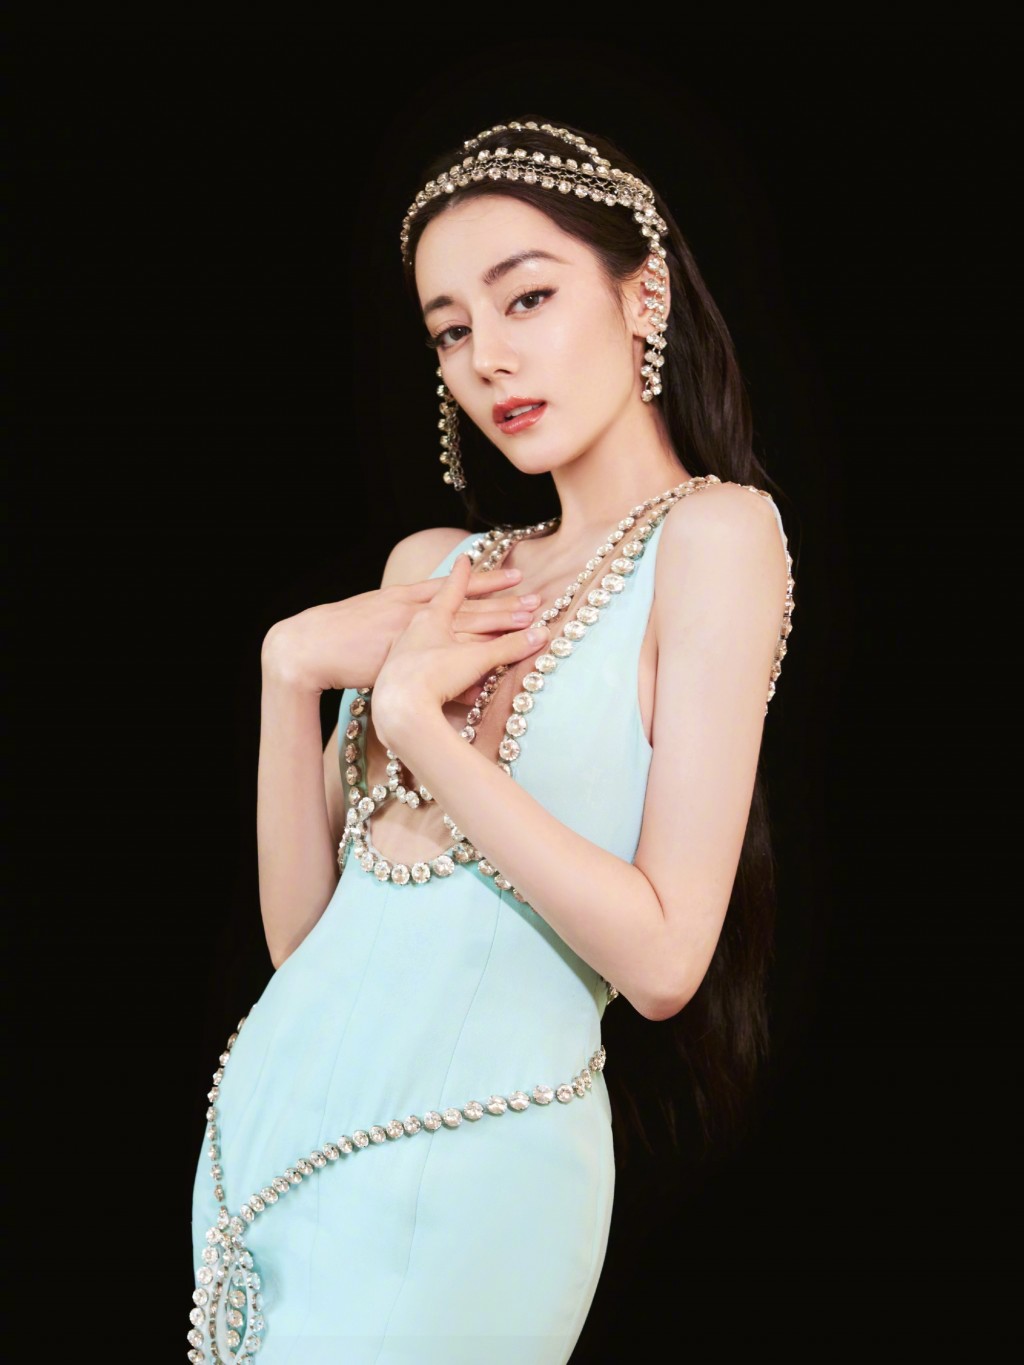 迪丽热巴蓝色水晶钻饰礼服俏丽性感魅惑风情写真图片